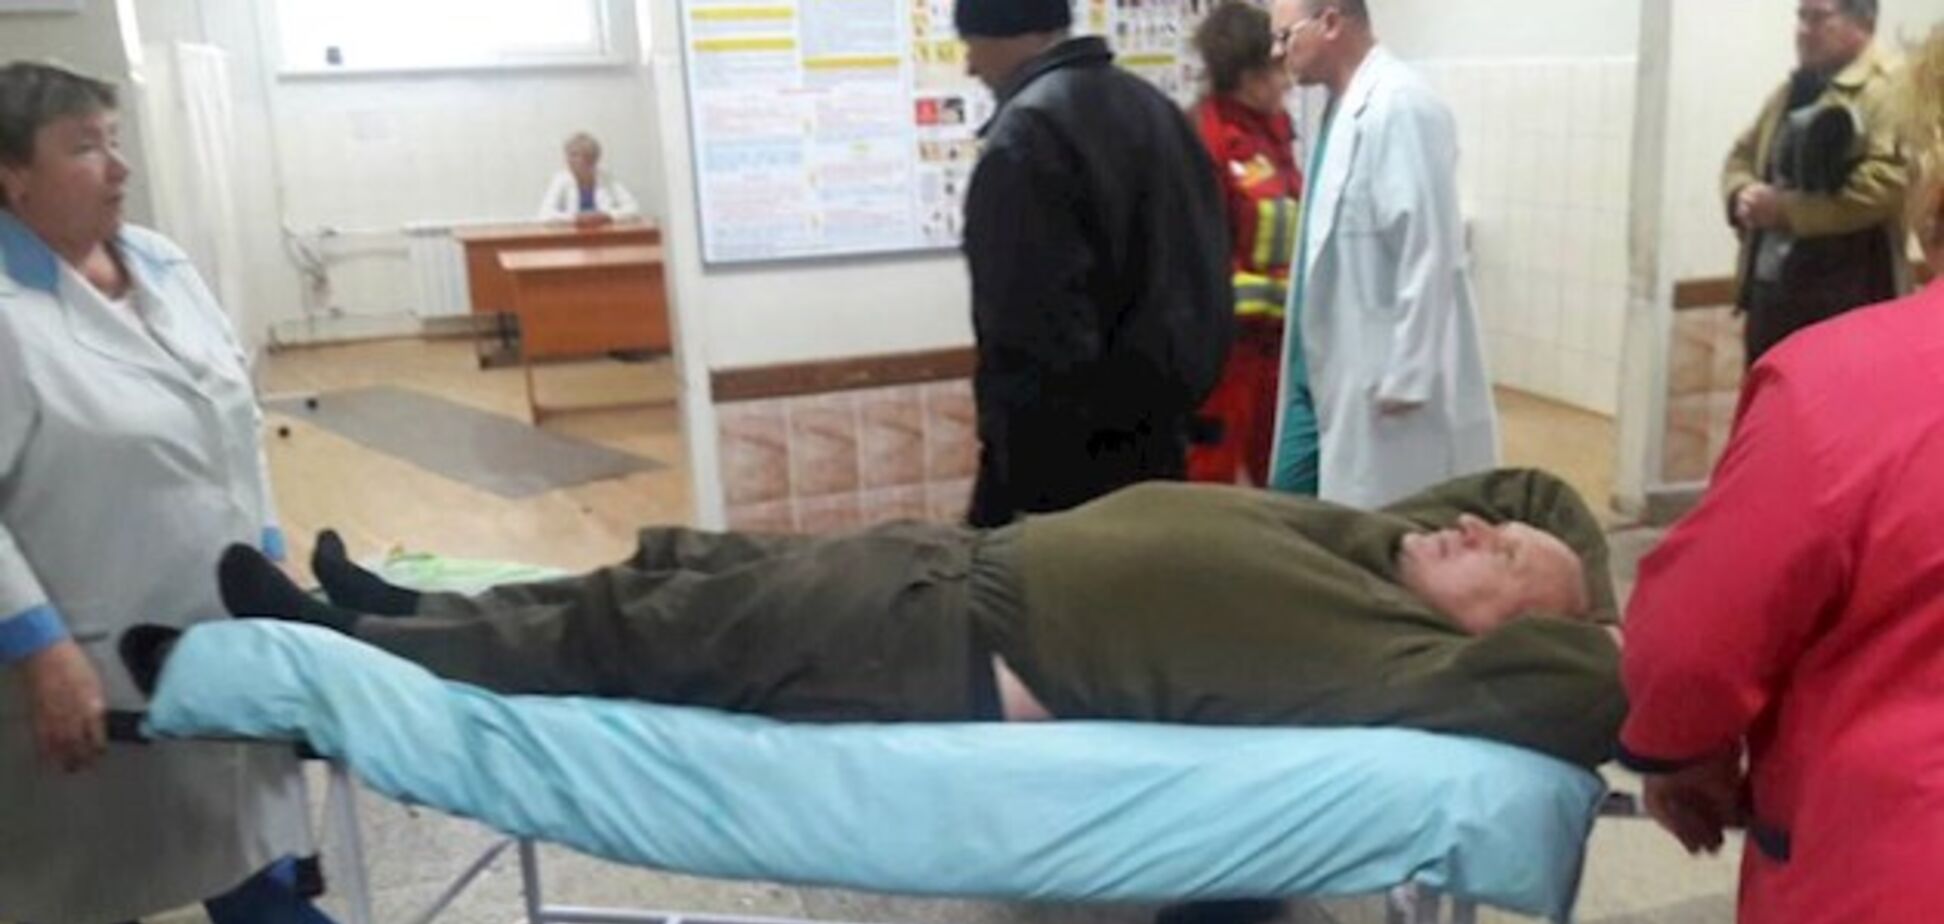 'Була домовленість': дружина Коханівського розповіла, як йому проломили голову в суді